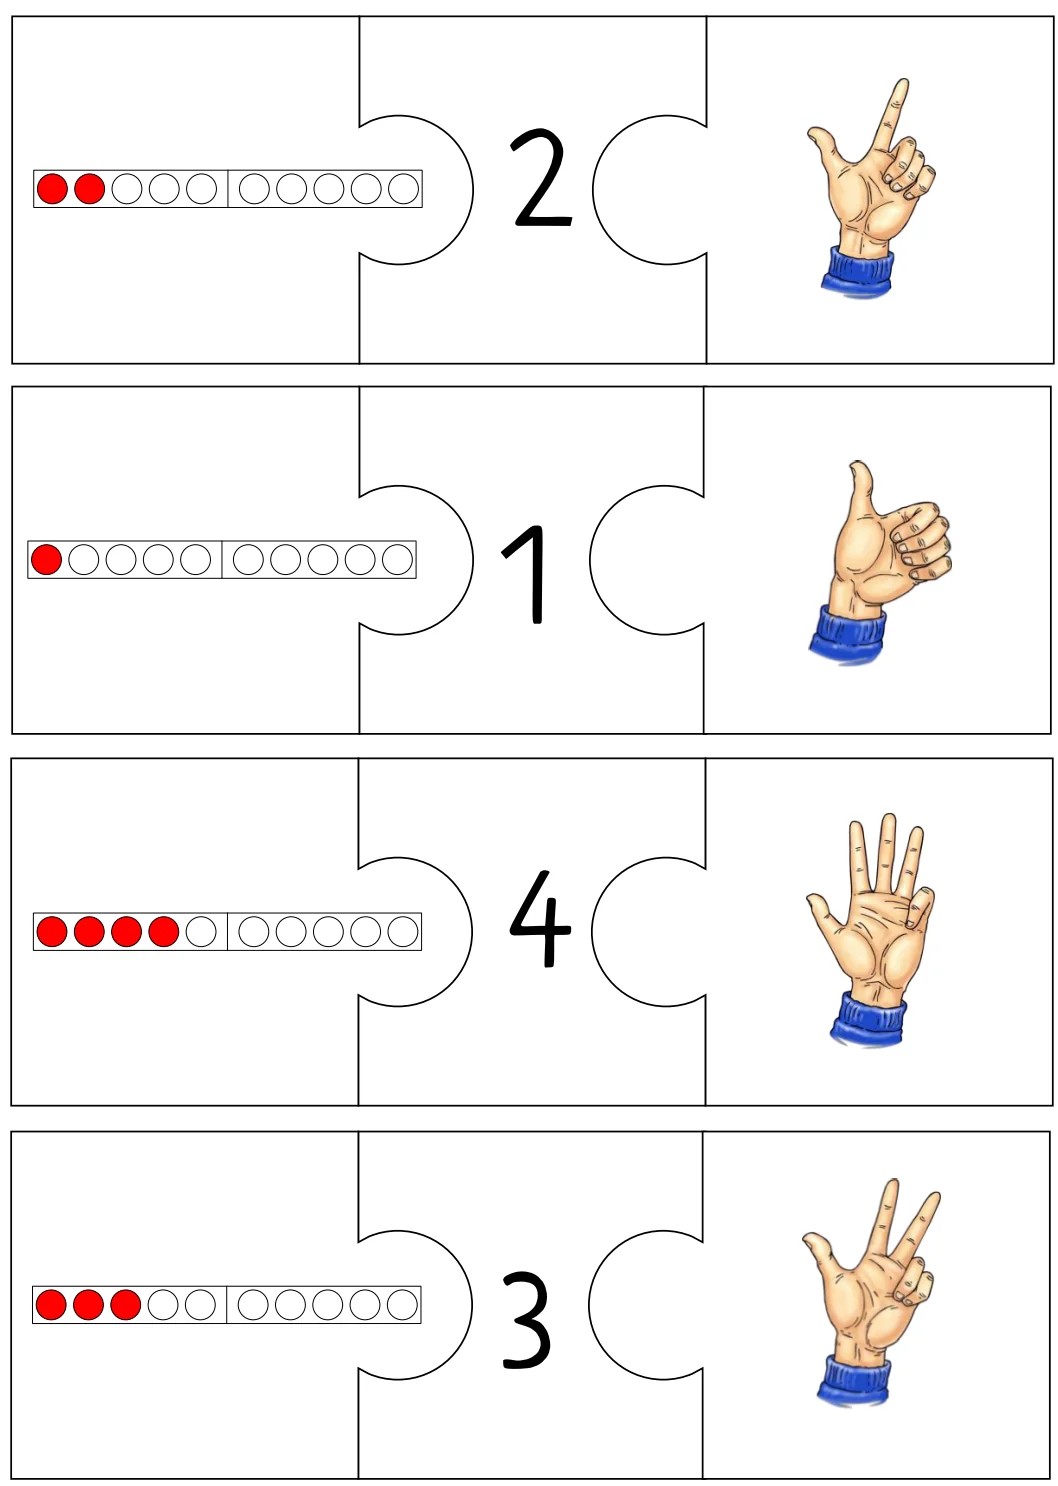 zr5 mengendarstellungen puzzle • ZR 5 Mengendarstellungen zum Puzzeln